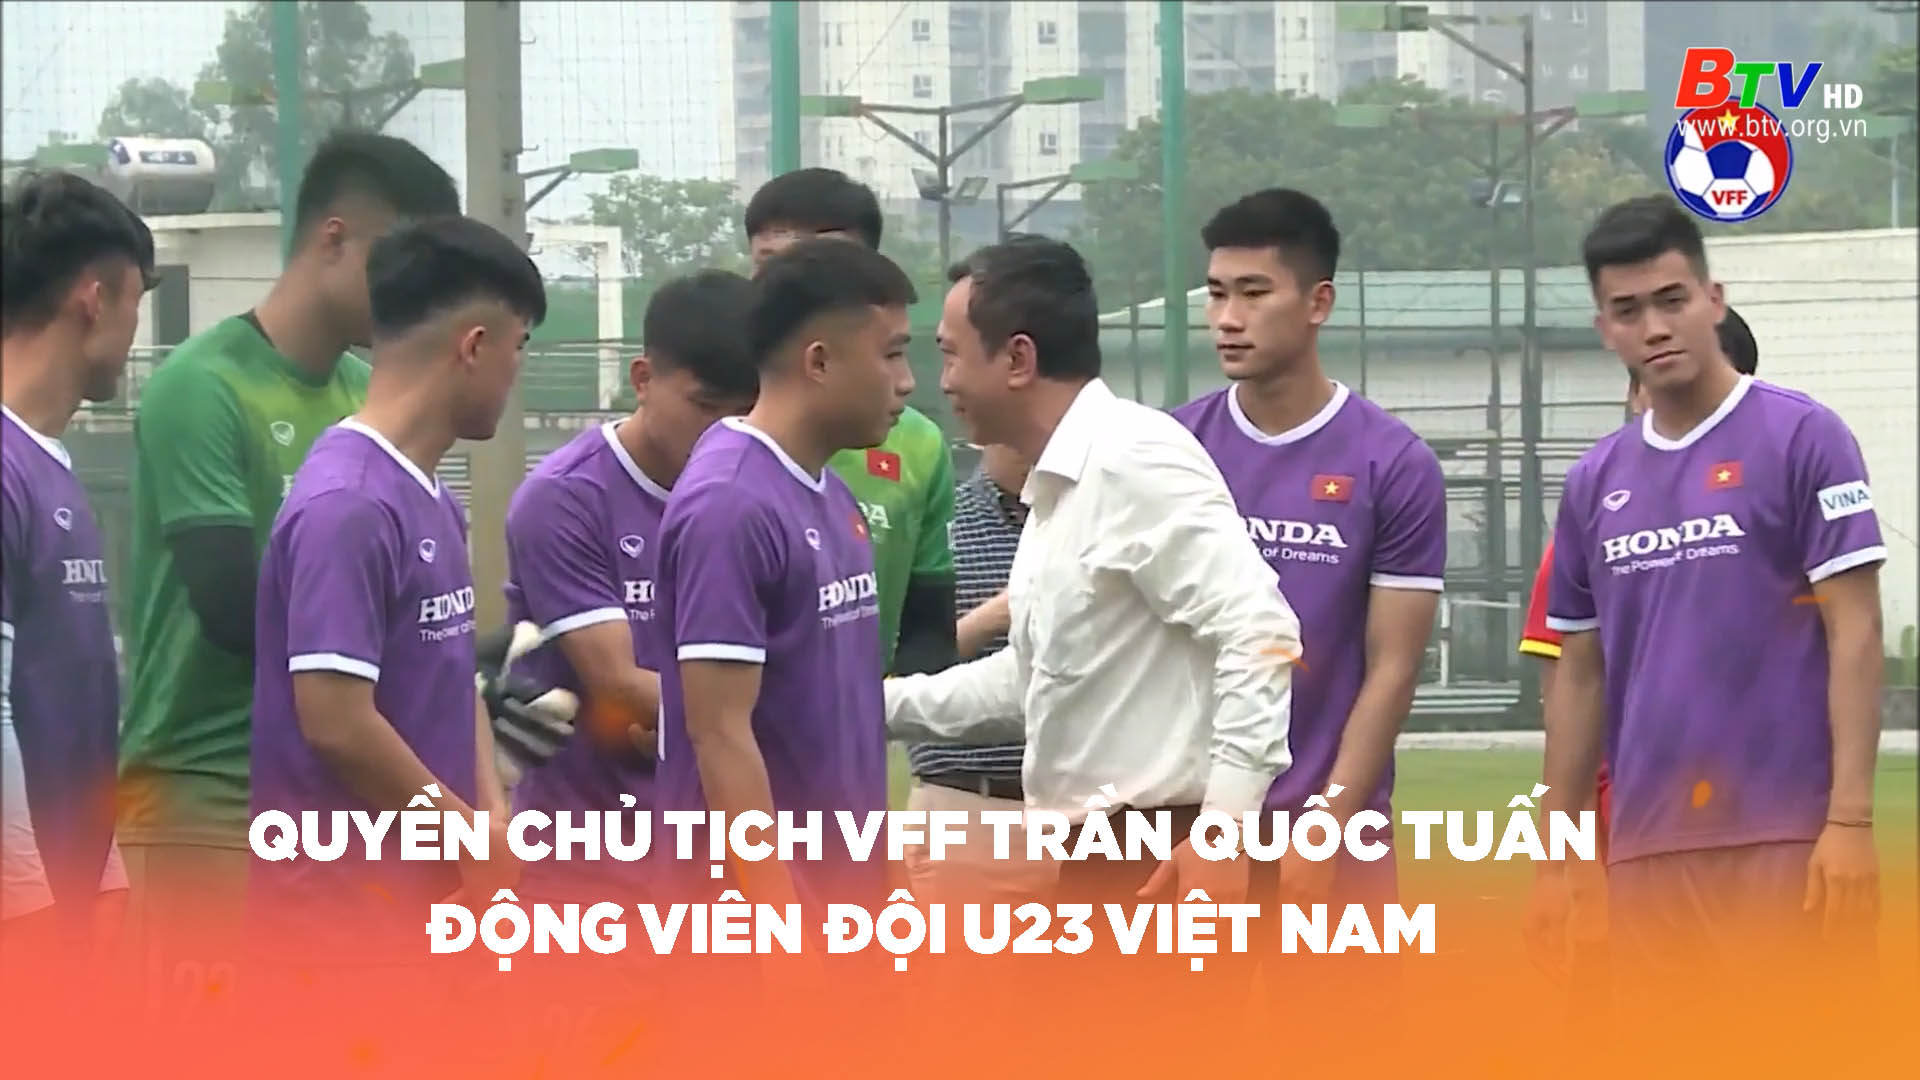 Quyền Chủ tịch VFF Trần Quốc Tuấn động viên đội U23 Việt Nam	